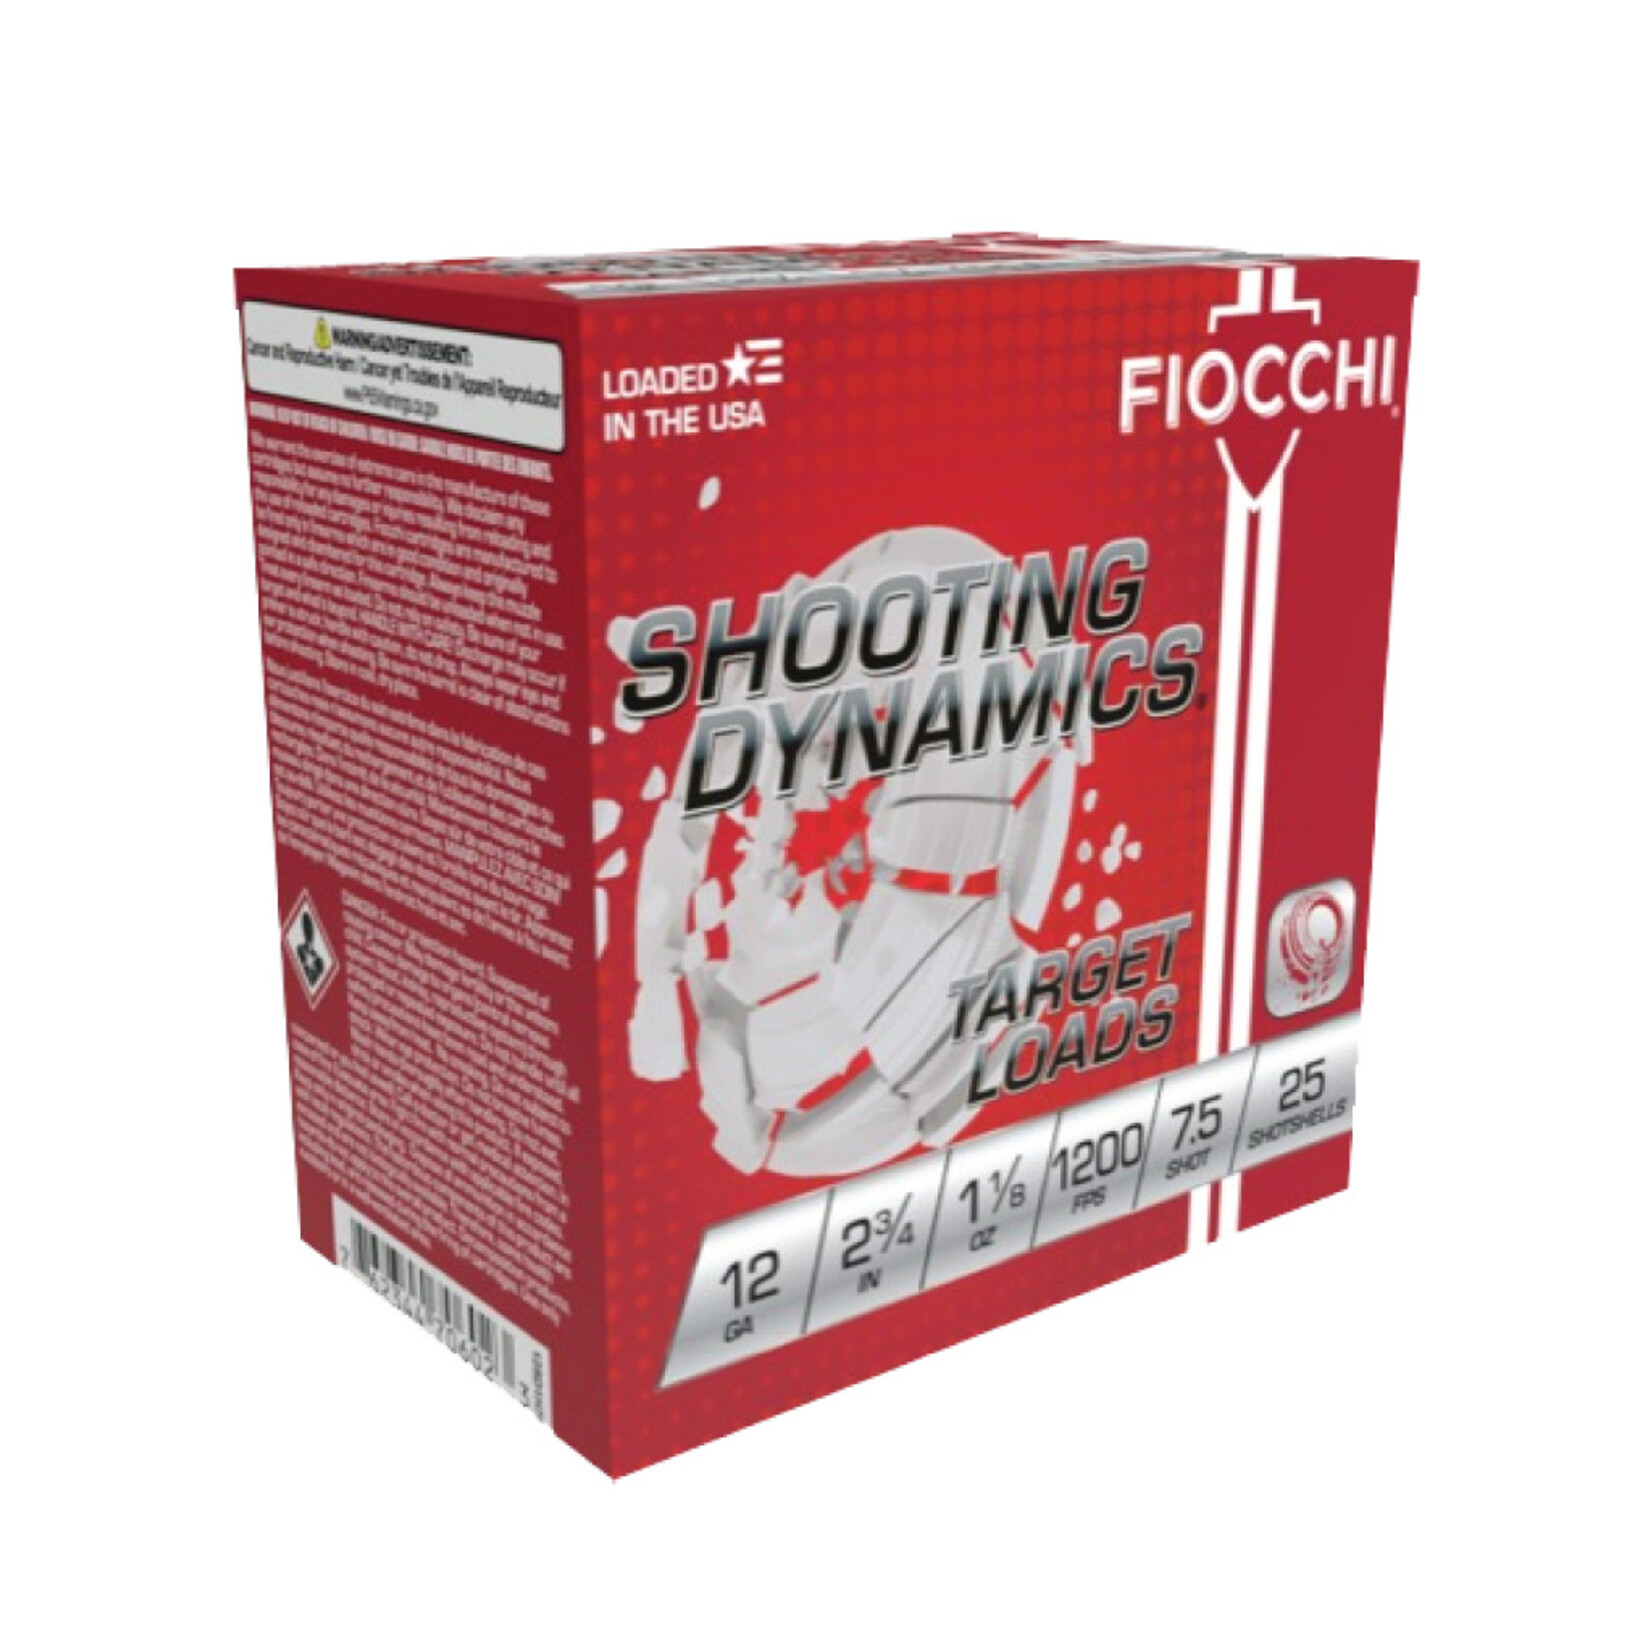 Fiocchi 12ga 2 3/4 1 1/8oz 7.5 Shot 25rd Box